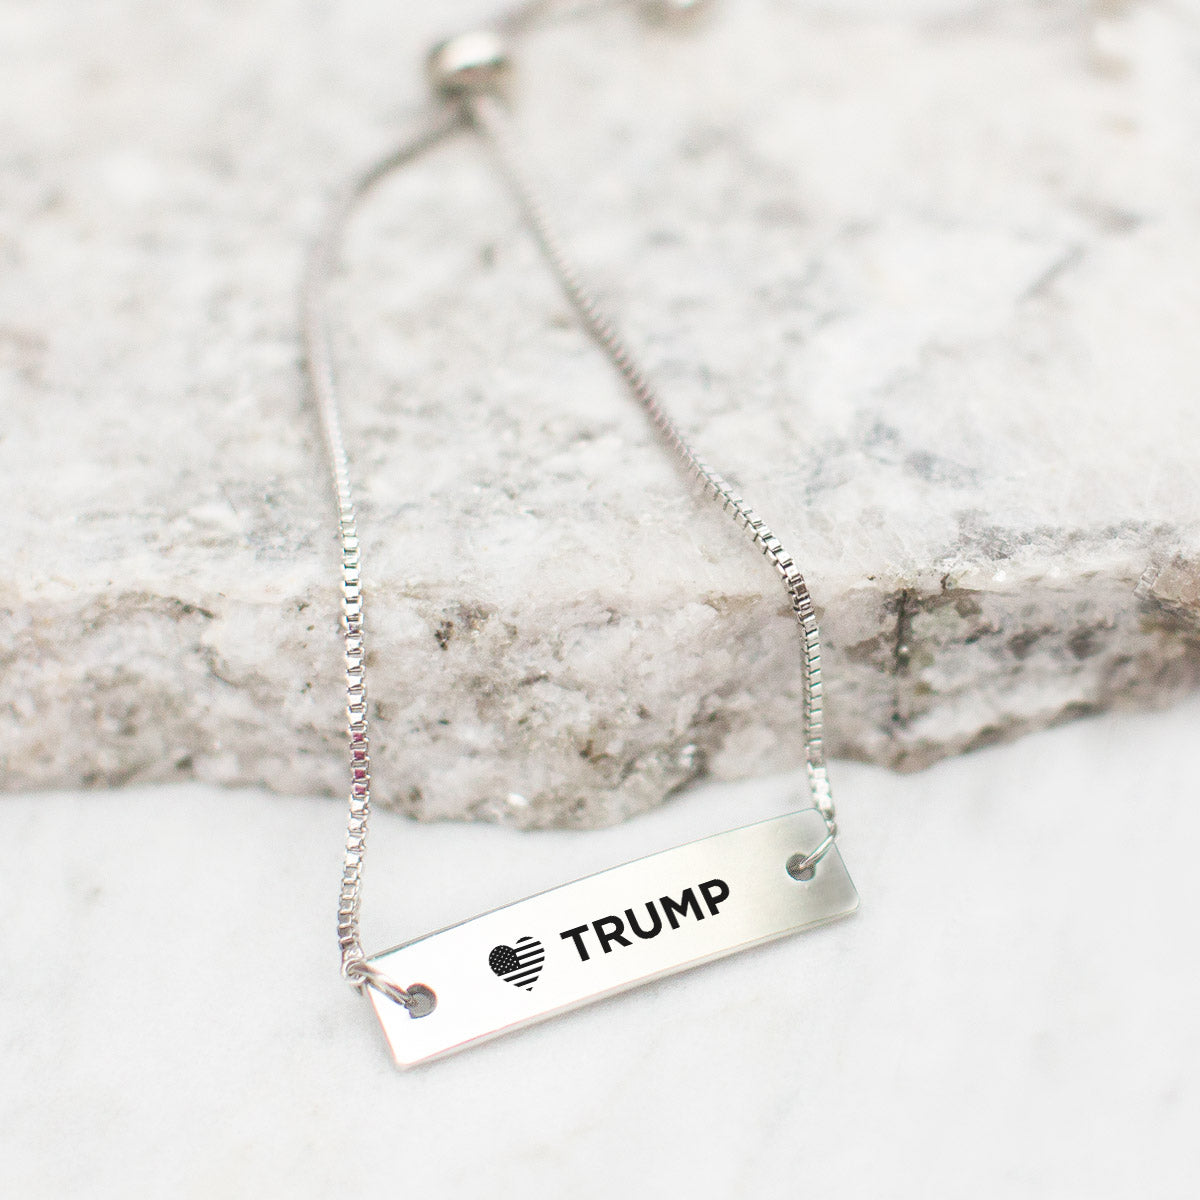 Silver Trump Support Adjustable Bar Bracelet